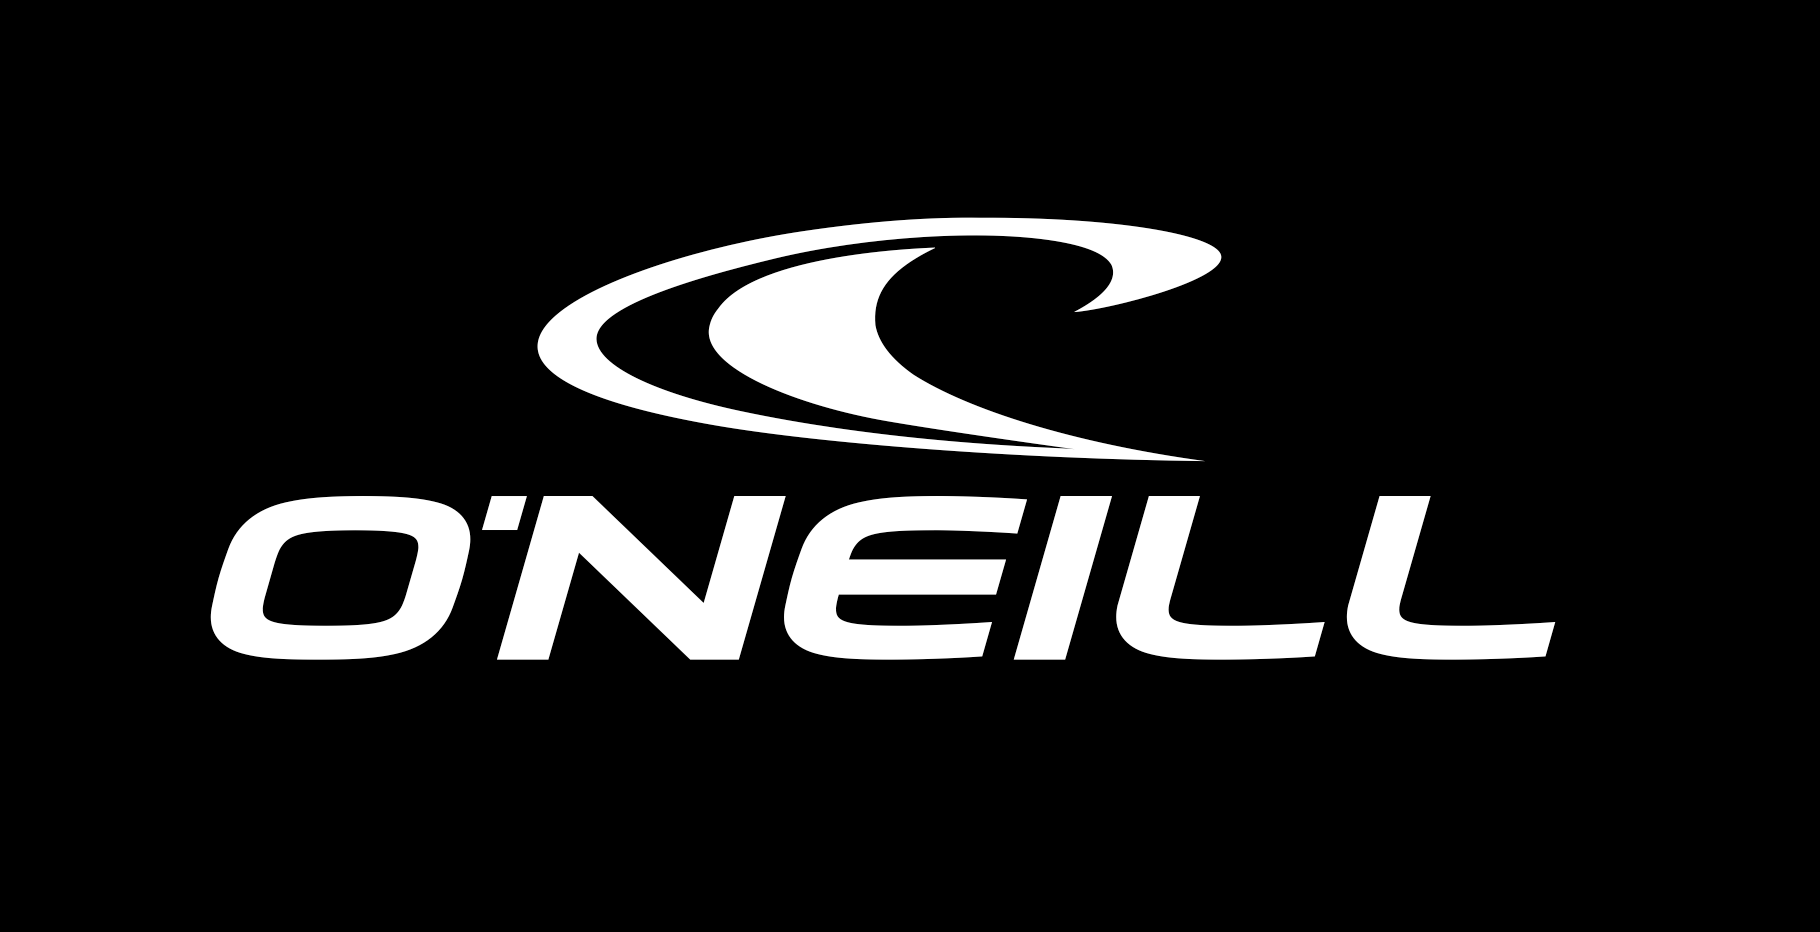 O'Neill Logo - O'Neill logo - Black | :D | Surf logo, Logos, Clothing brand logos